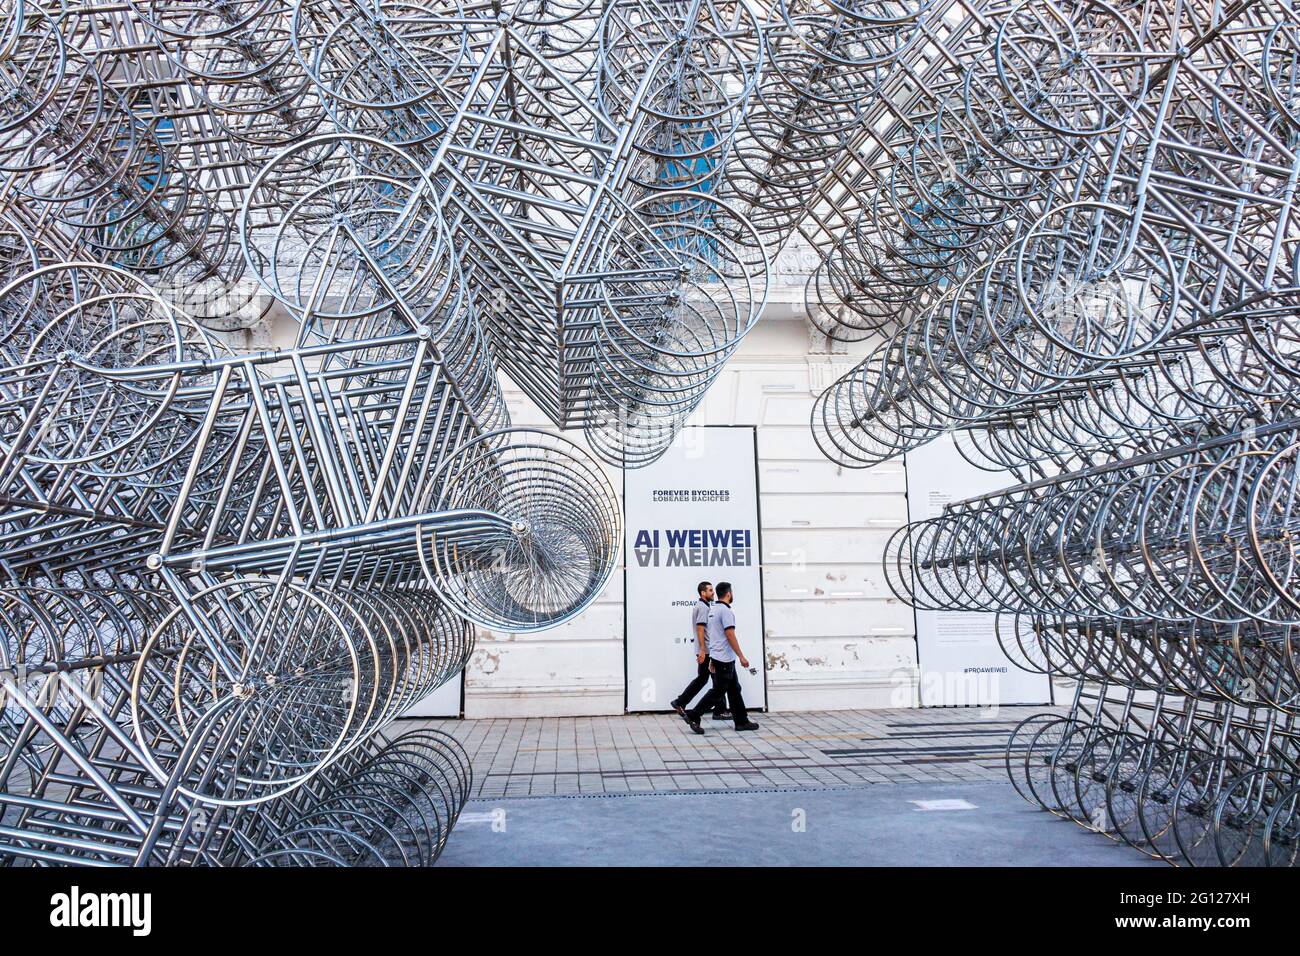 Argentina Buenos Aires Caminito Barrio de la Boca Fundación PROA centro de arte contemporáneo museo galería exposición escultura Ai Weiwei Forever Bicicleta Foto de stock